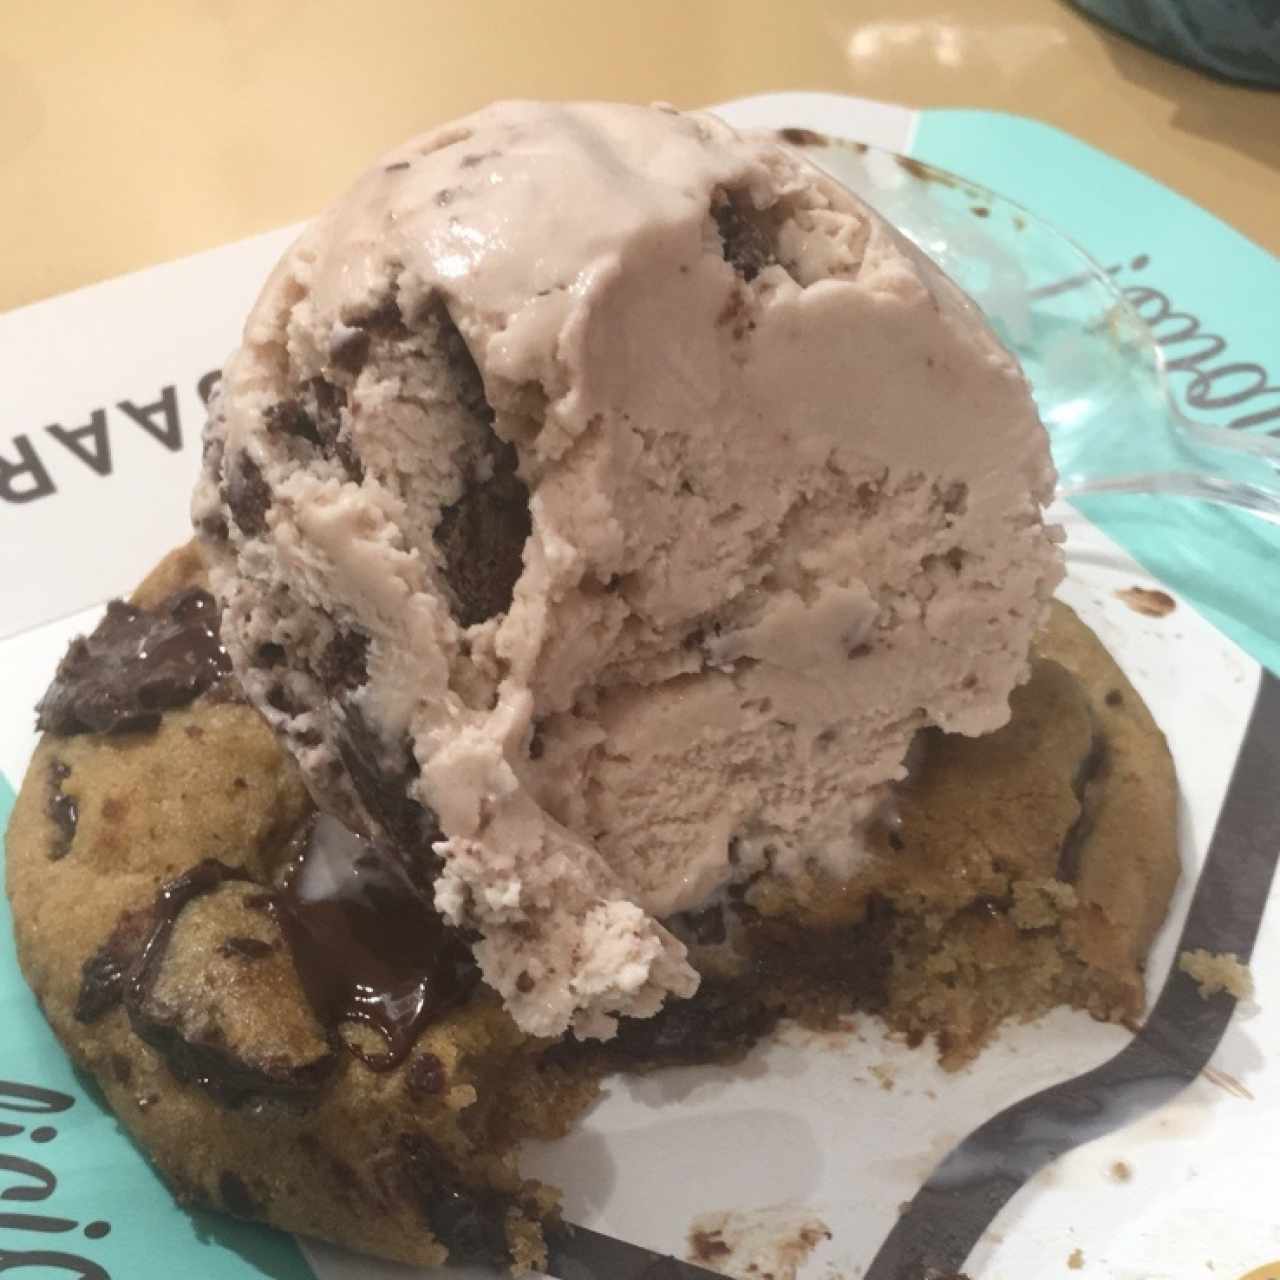  chocolate chip cookie y helado de brownie